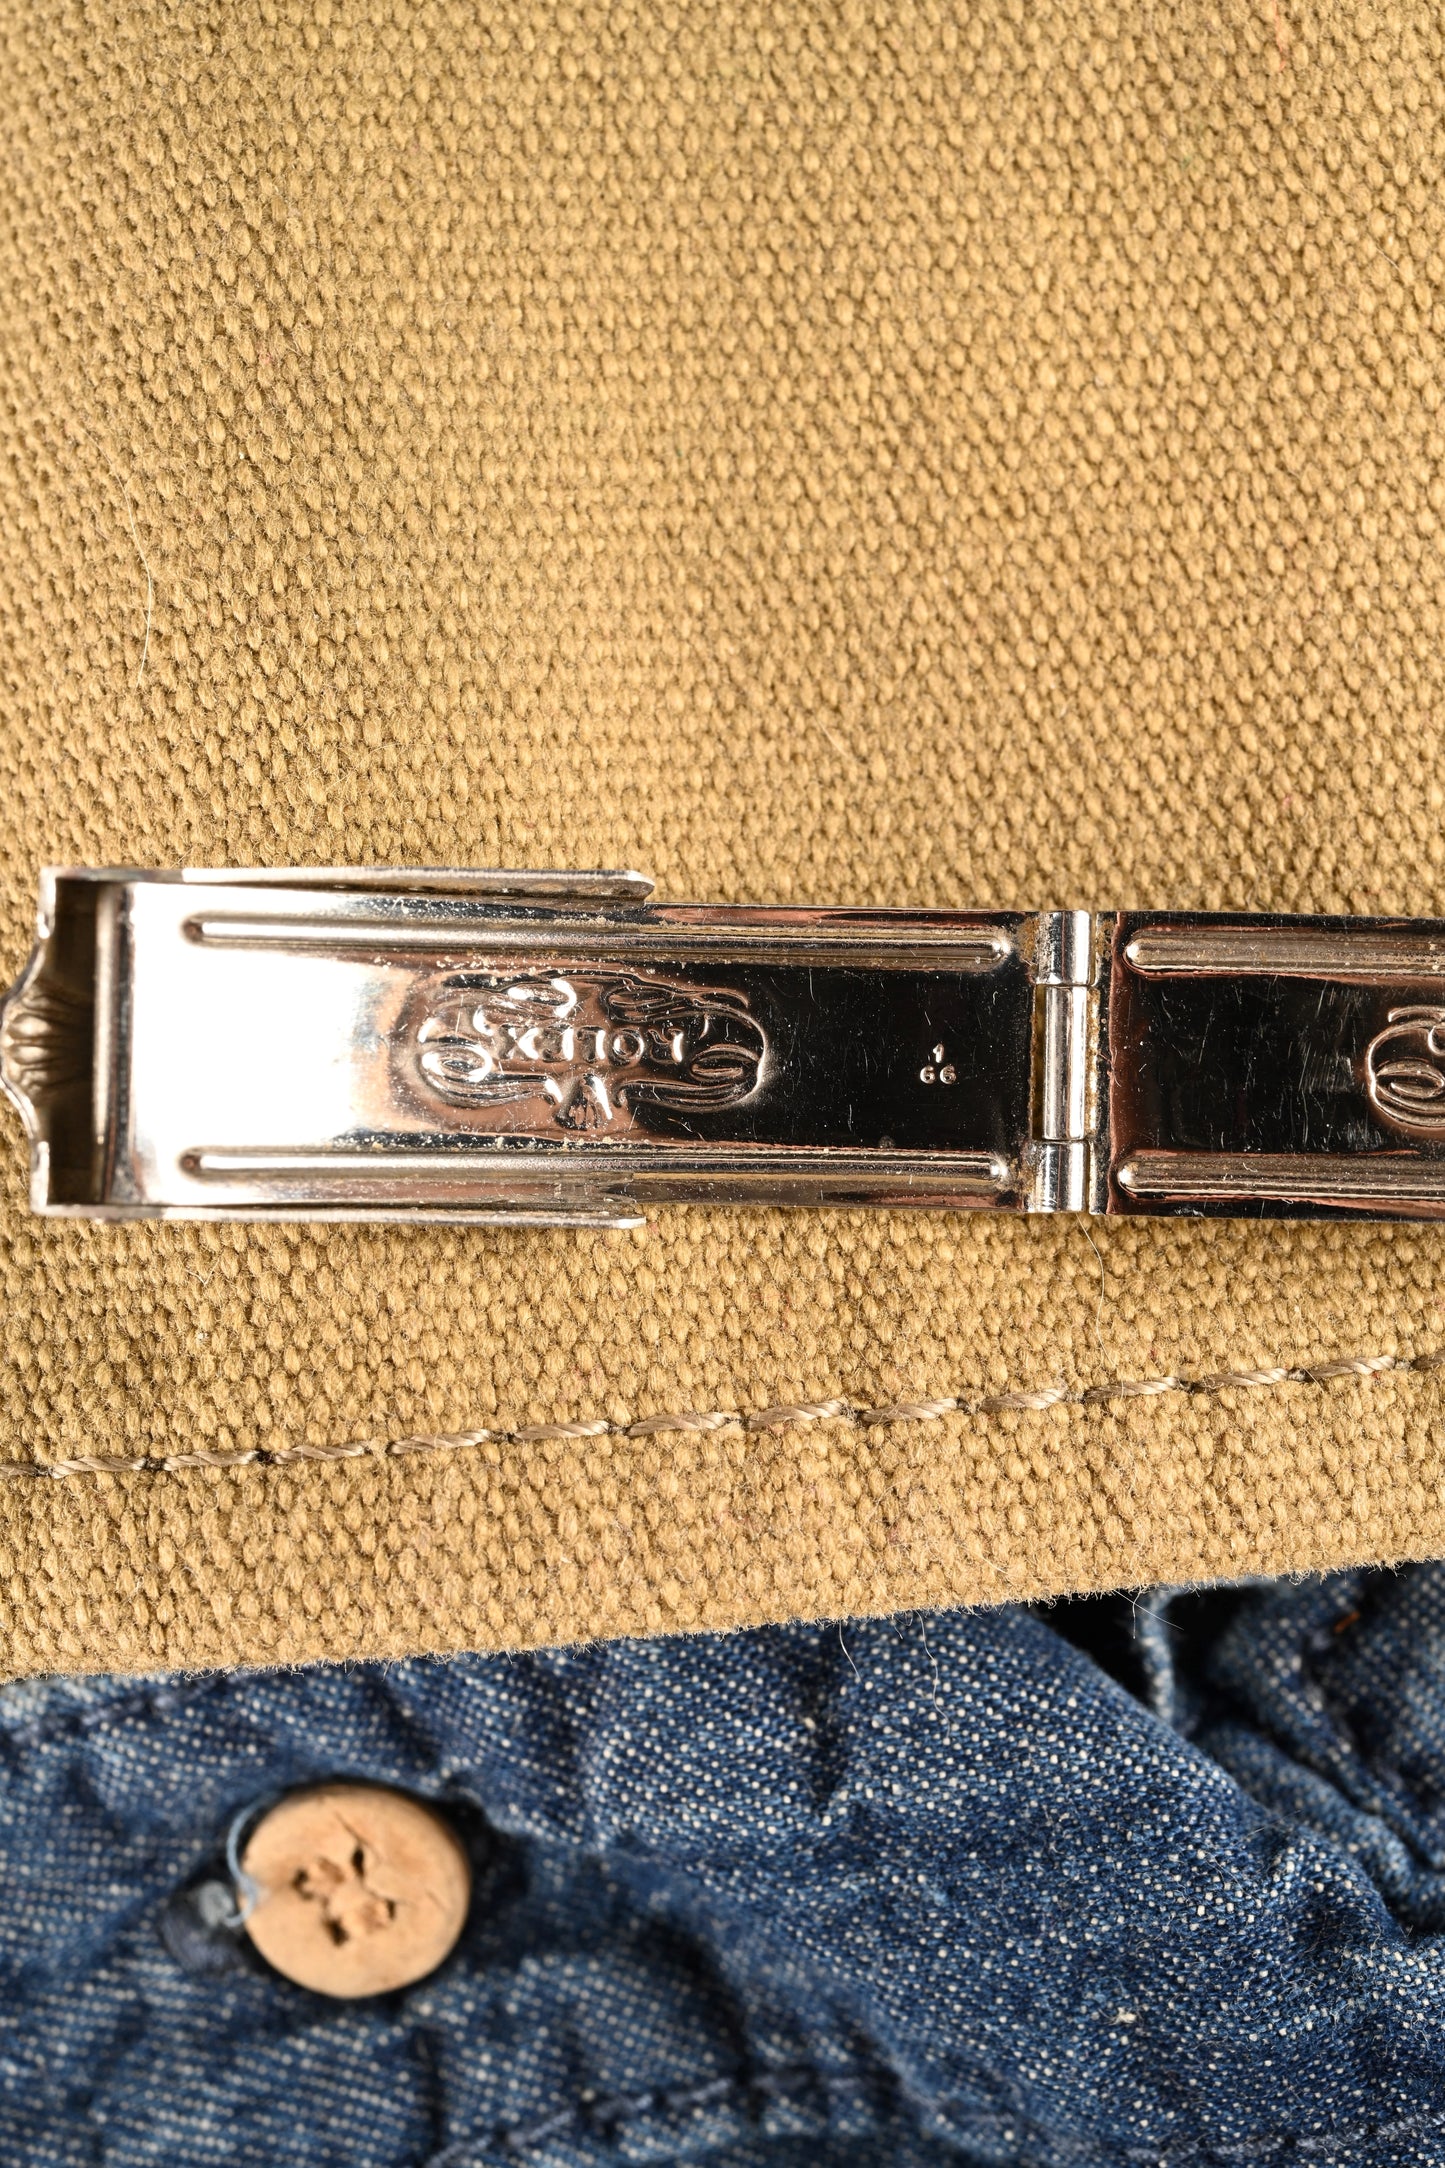 Rolex Rivet Bracelet and Clasp